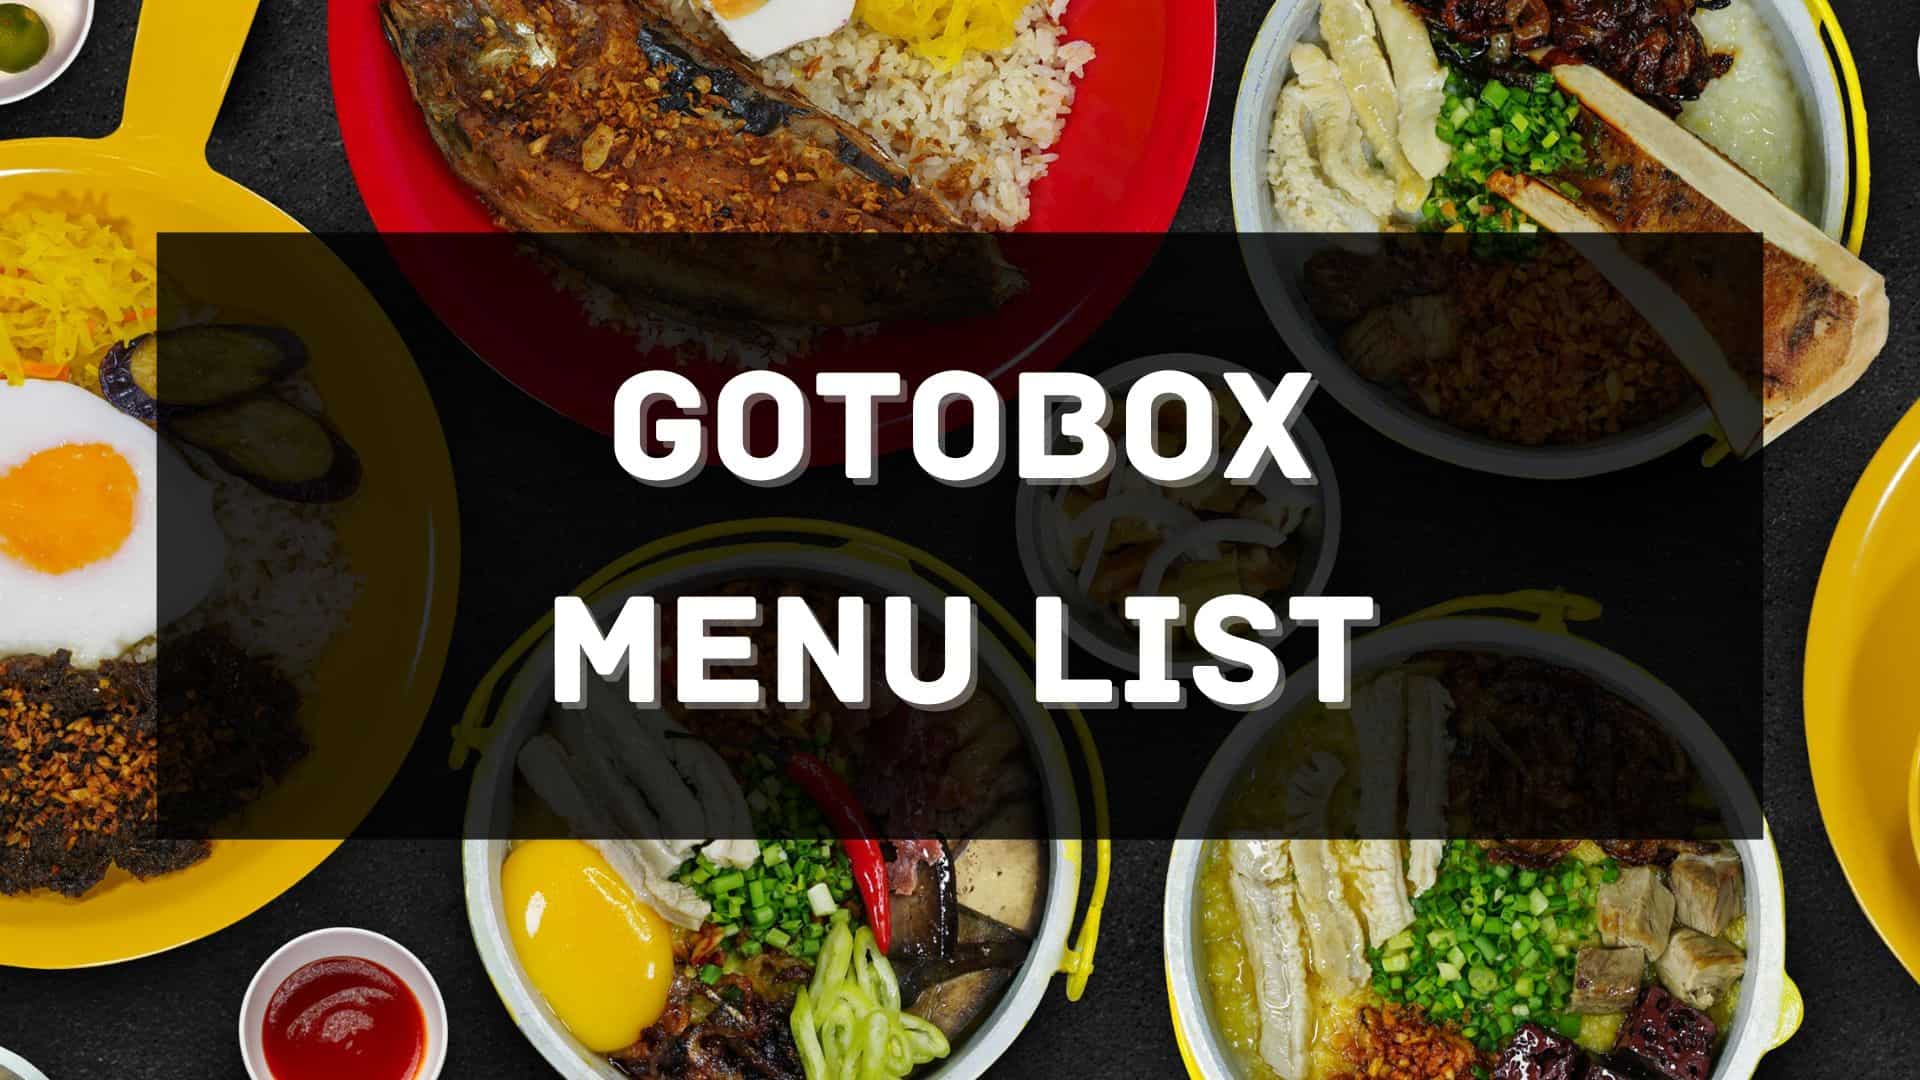 Gotobox menu prices philippines